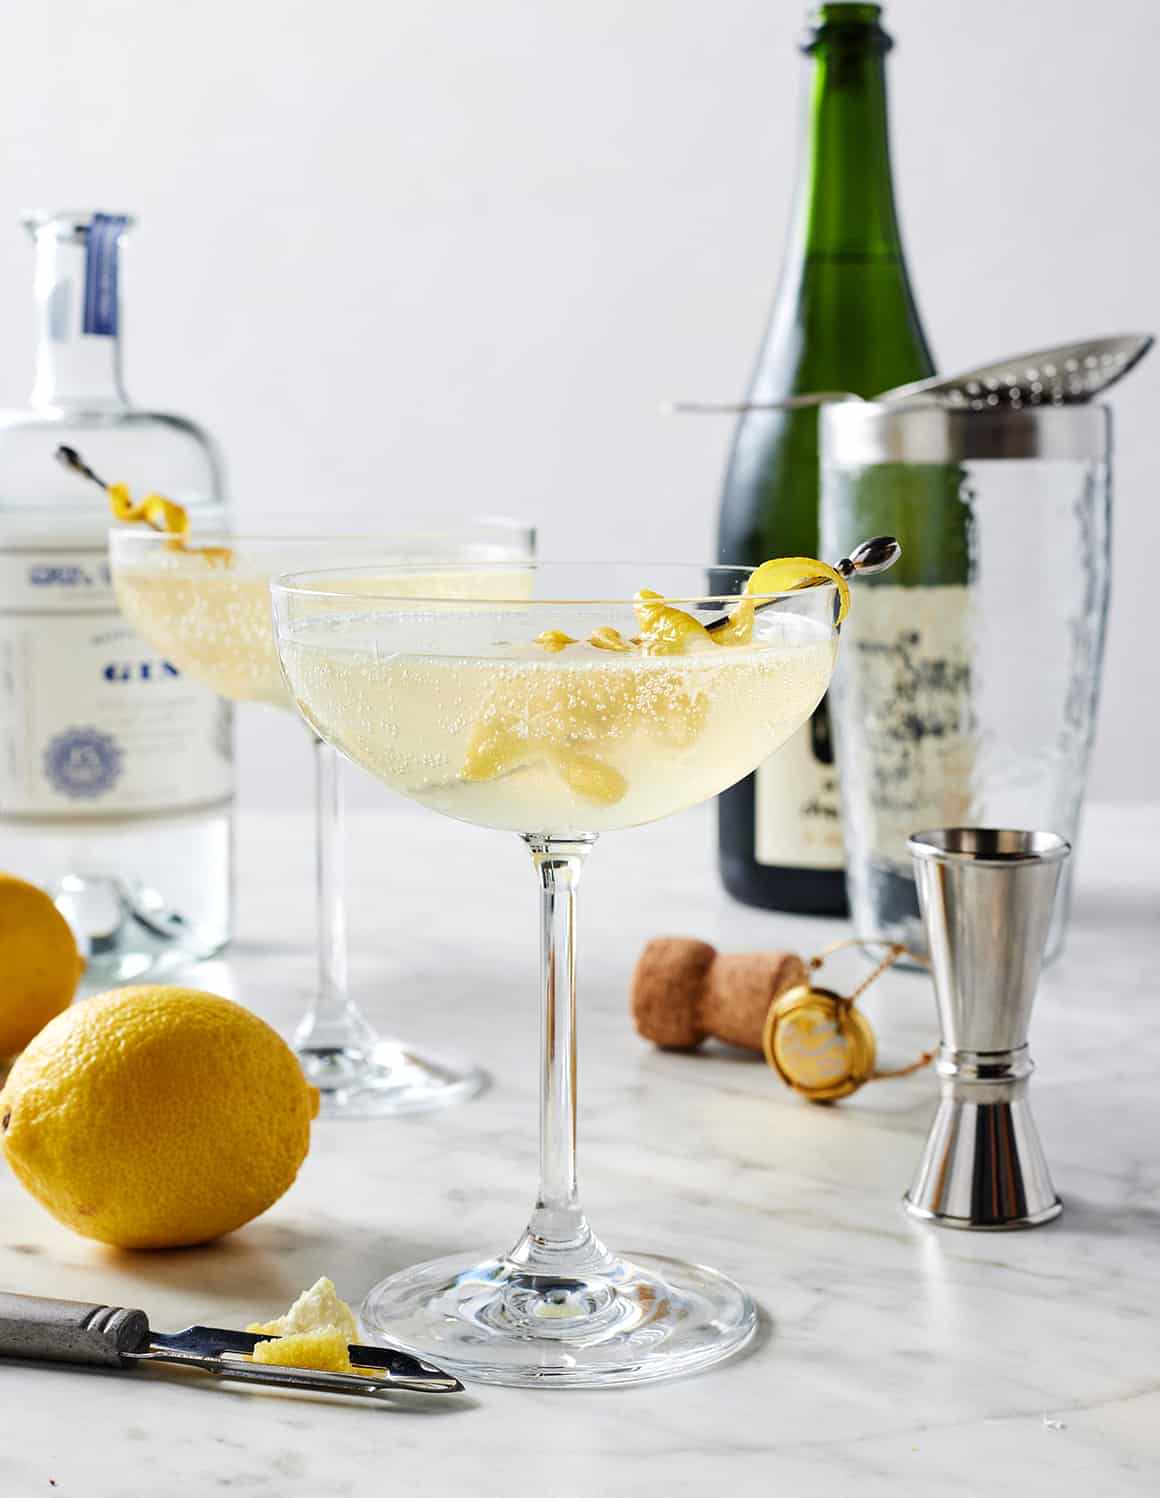 Recette de cocktail French 75 : Amour et citrons